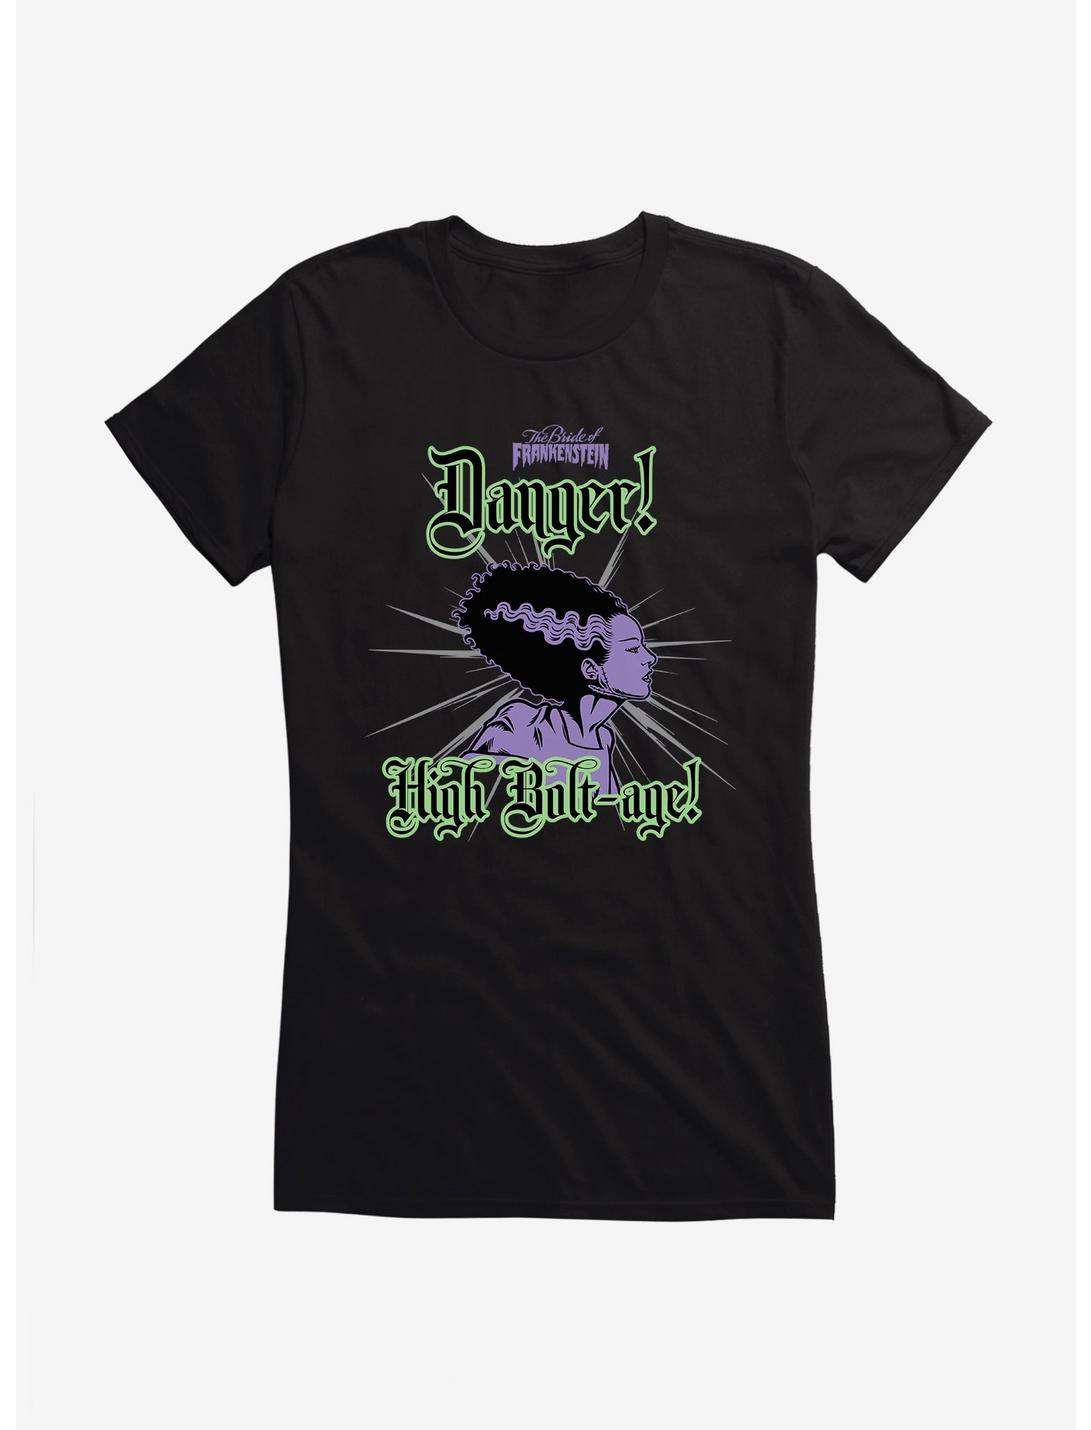 Bride Of Frankenstein Danger High Bolt-age Girls T-Shirt, BLACK, hi-res